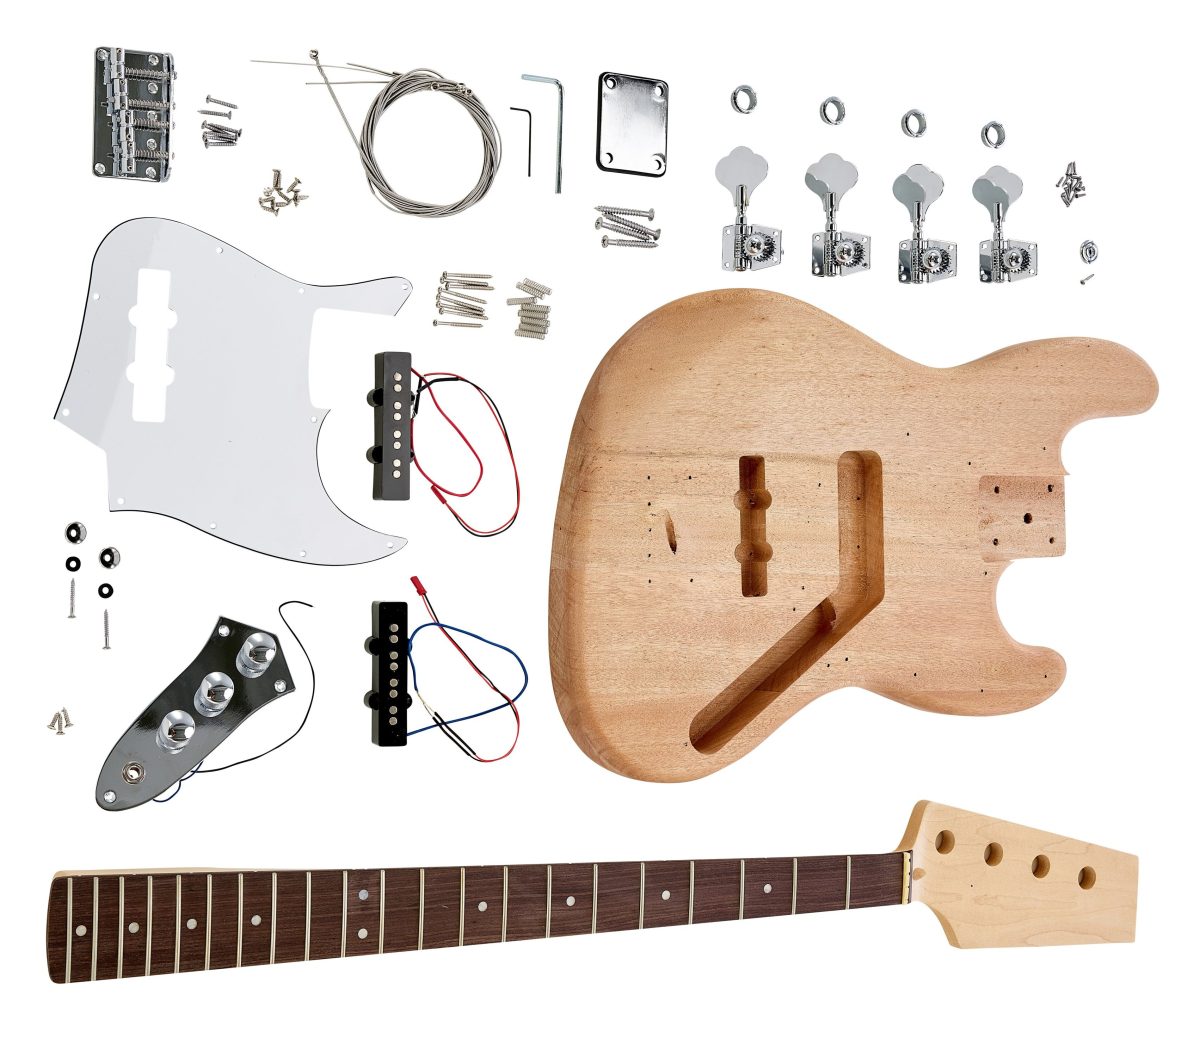 MM Bass Guitar Kit